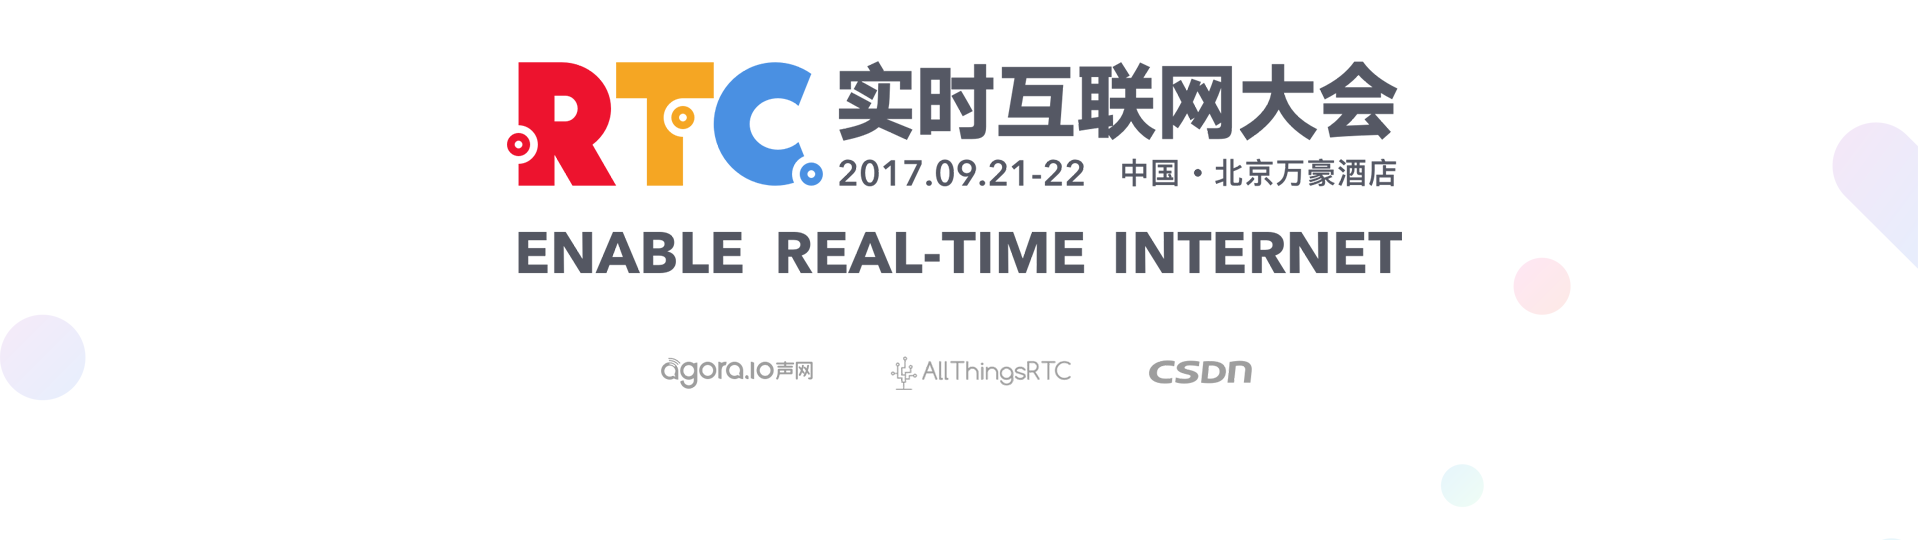 RTC2017 实时互联网大会